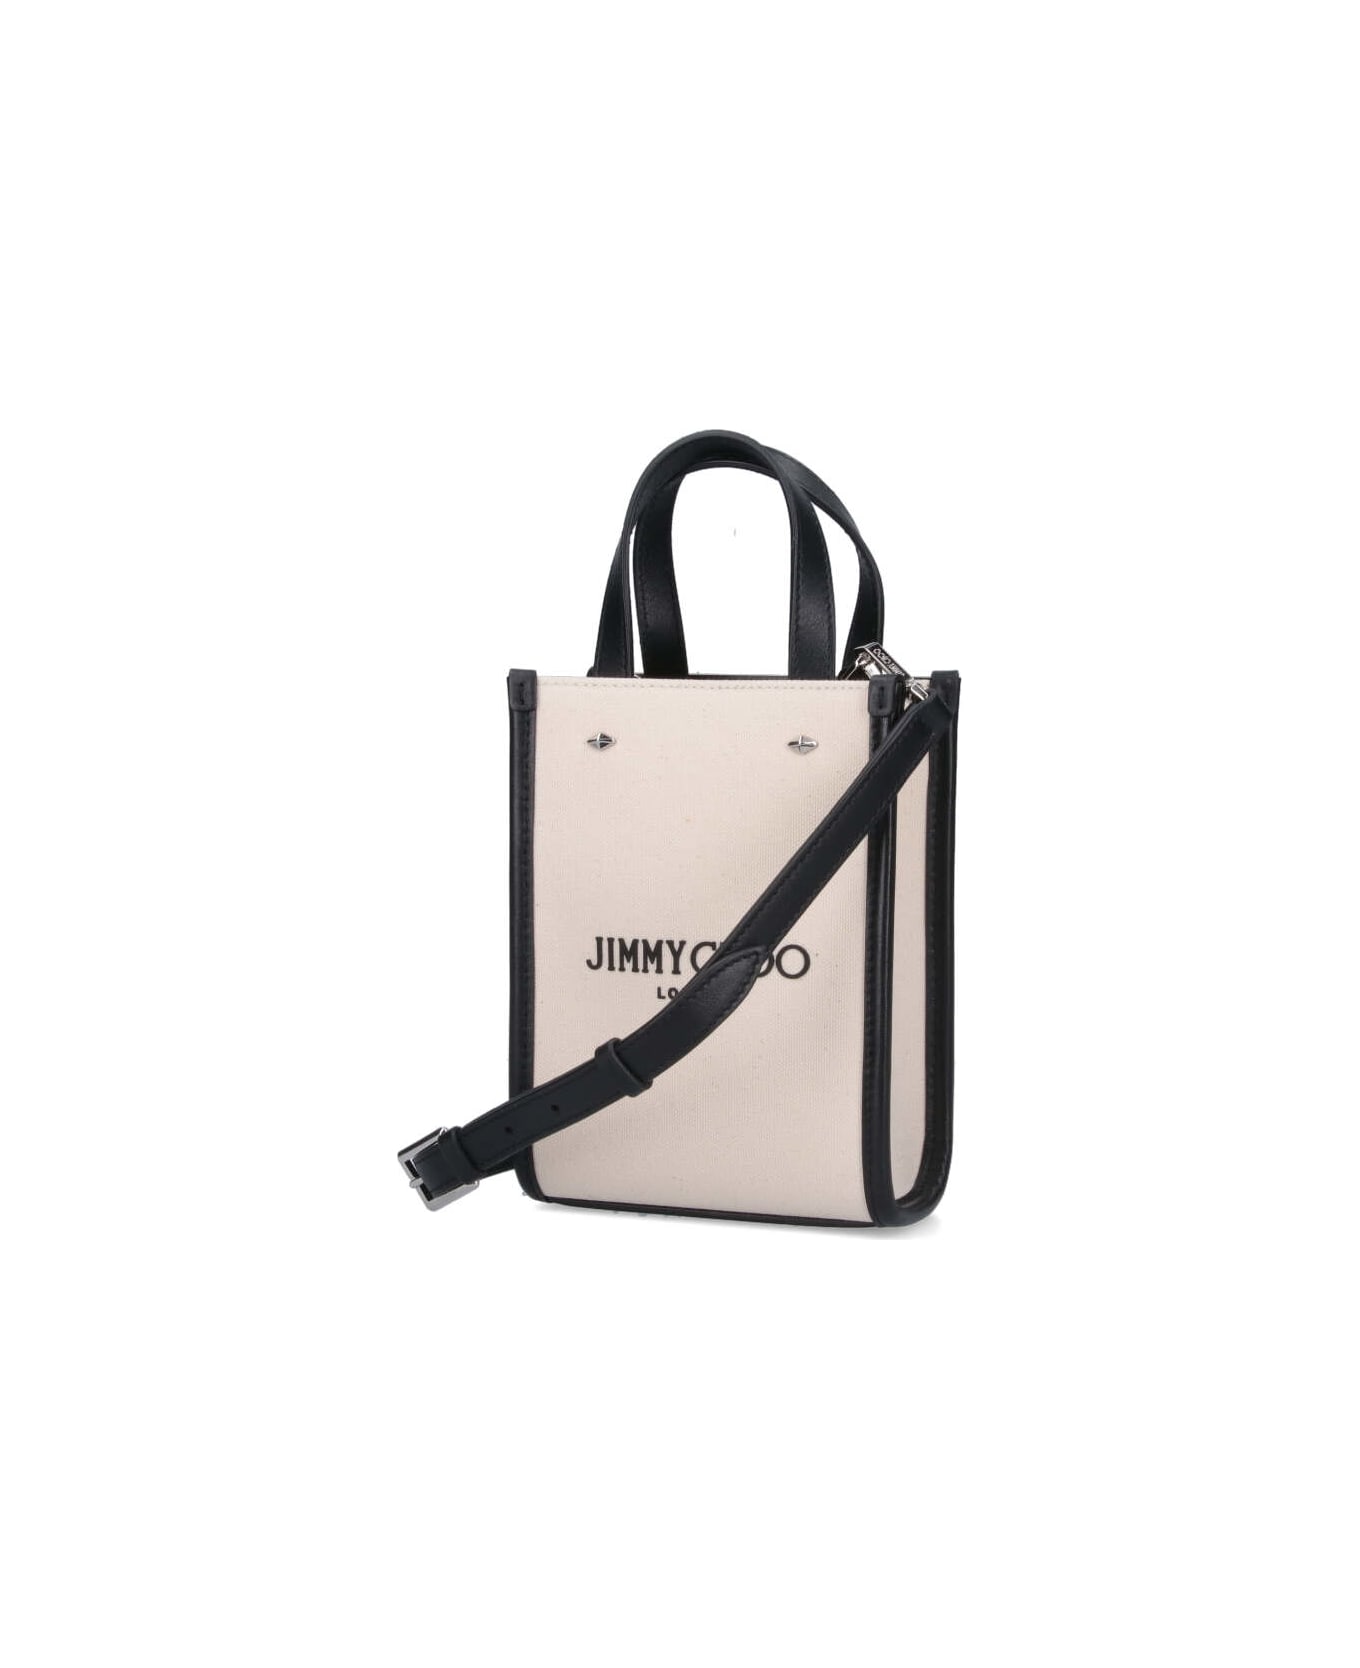 Jimmy Choo N/s Mini Tote Bag - Crema トートバッグ